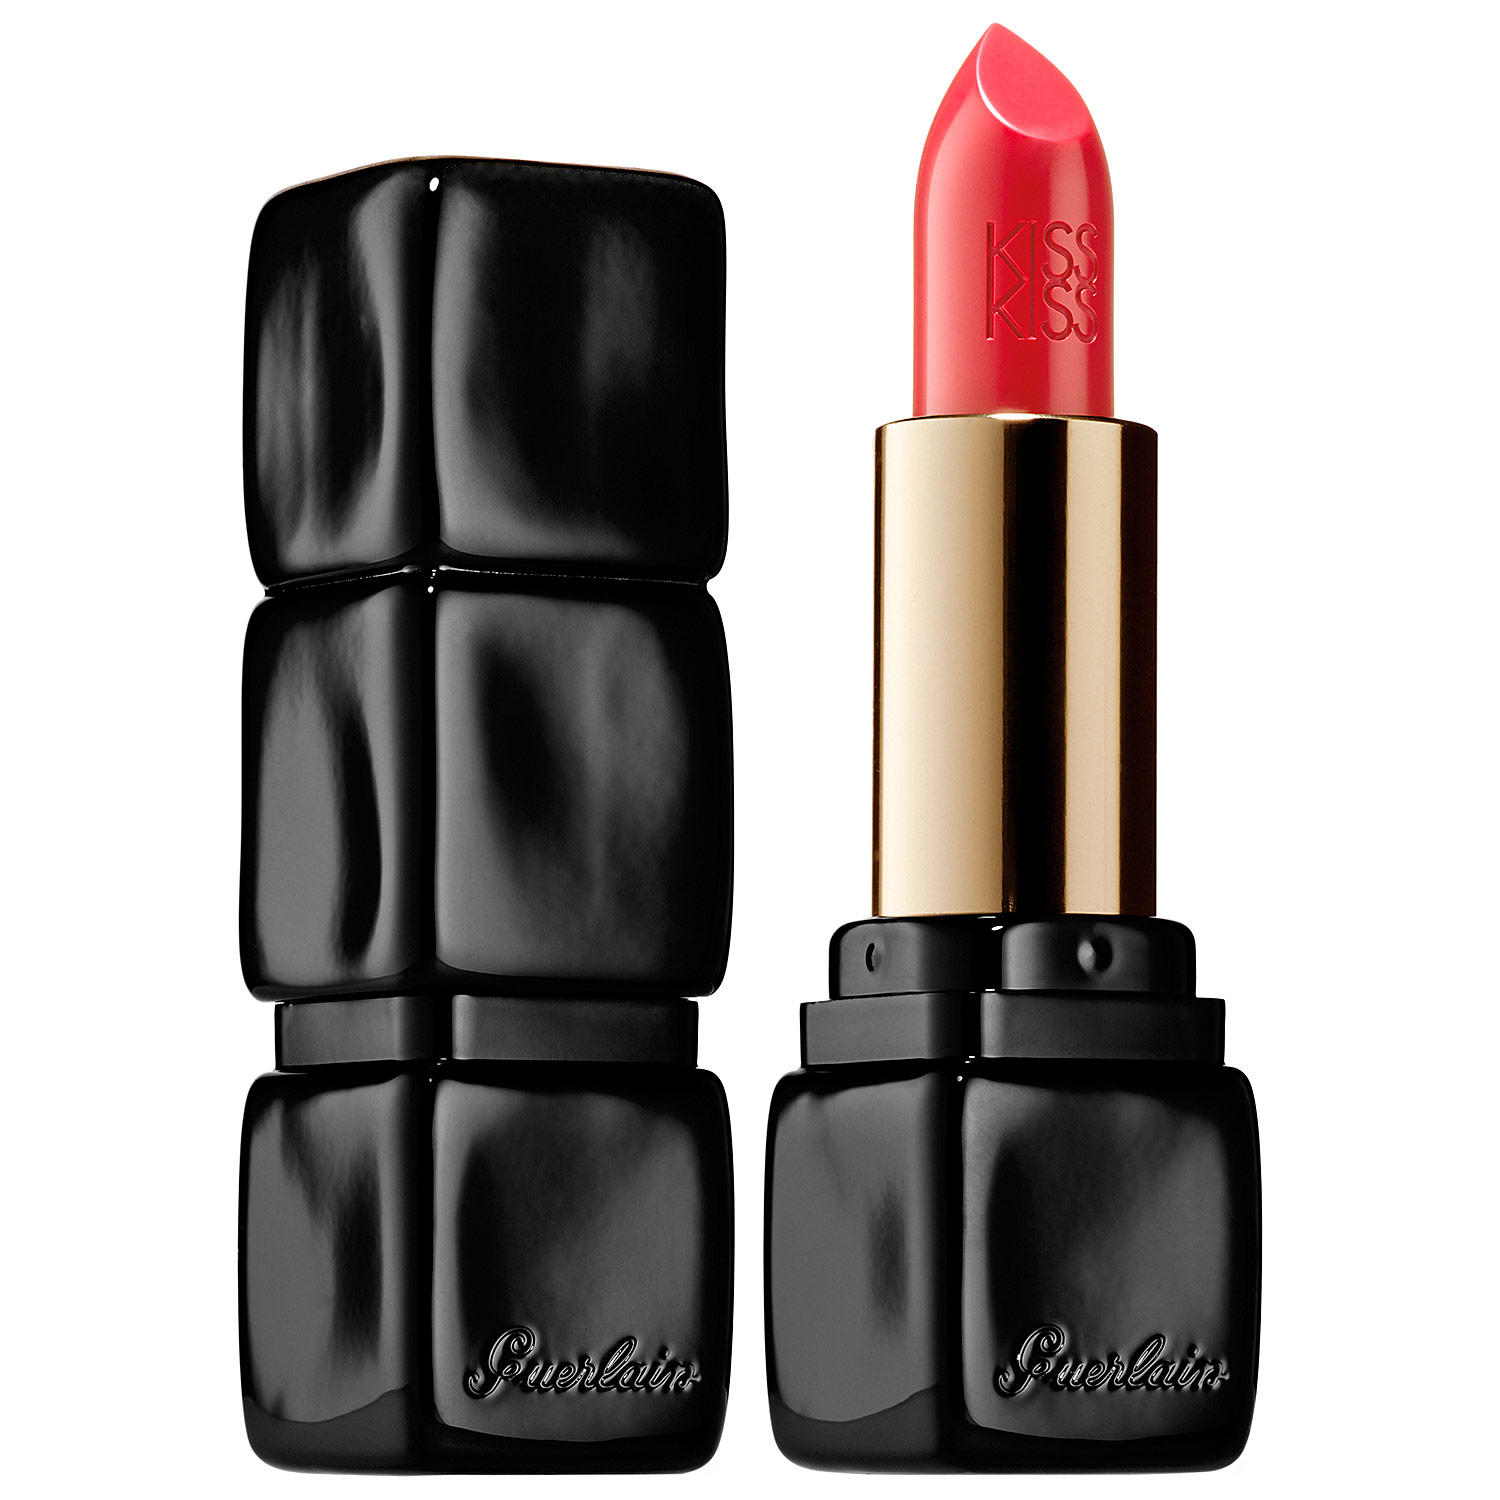 Guerlain KissKiss Creamy Satin Finish Lipstick Sugar Kiss 343